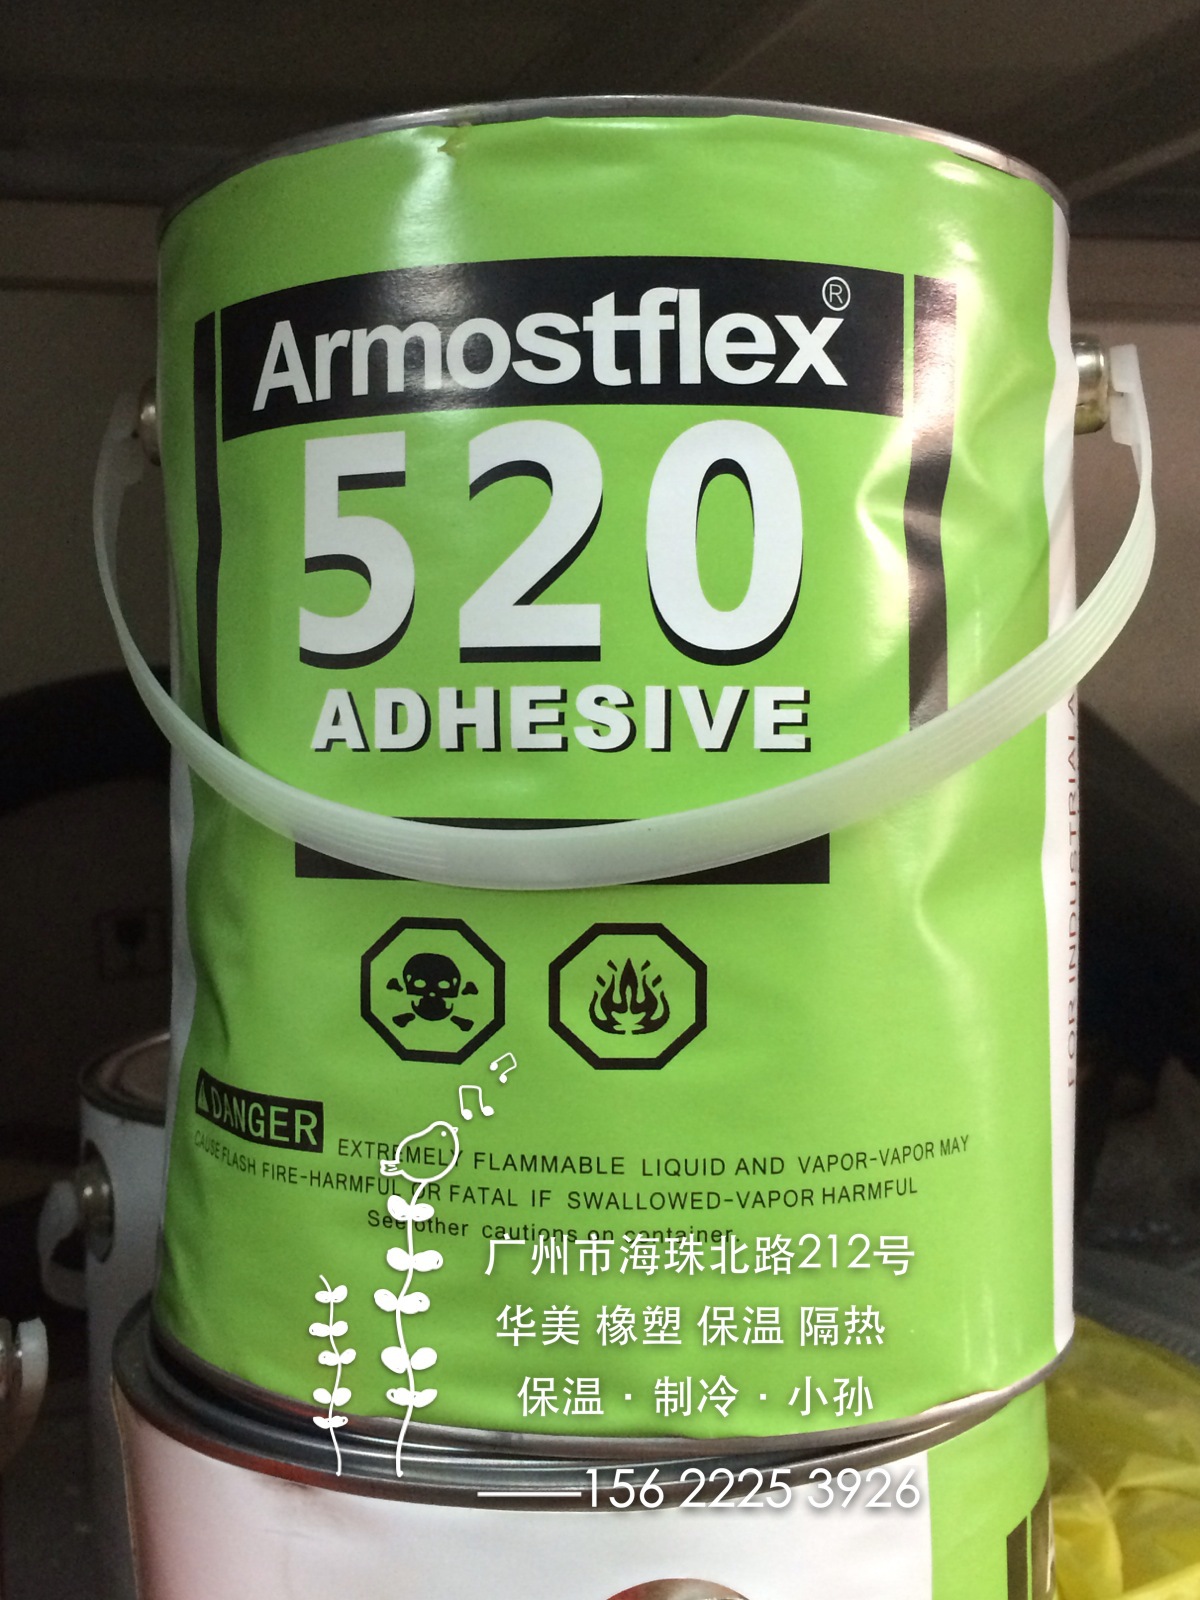 橡塑保温隔热材料专用胶水 福乐斯armaflex520胶水 阿乐斯